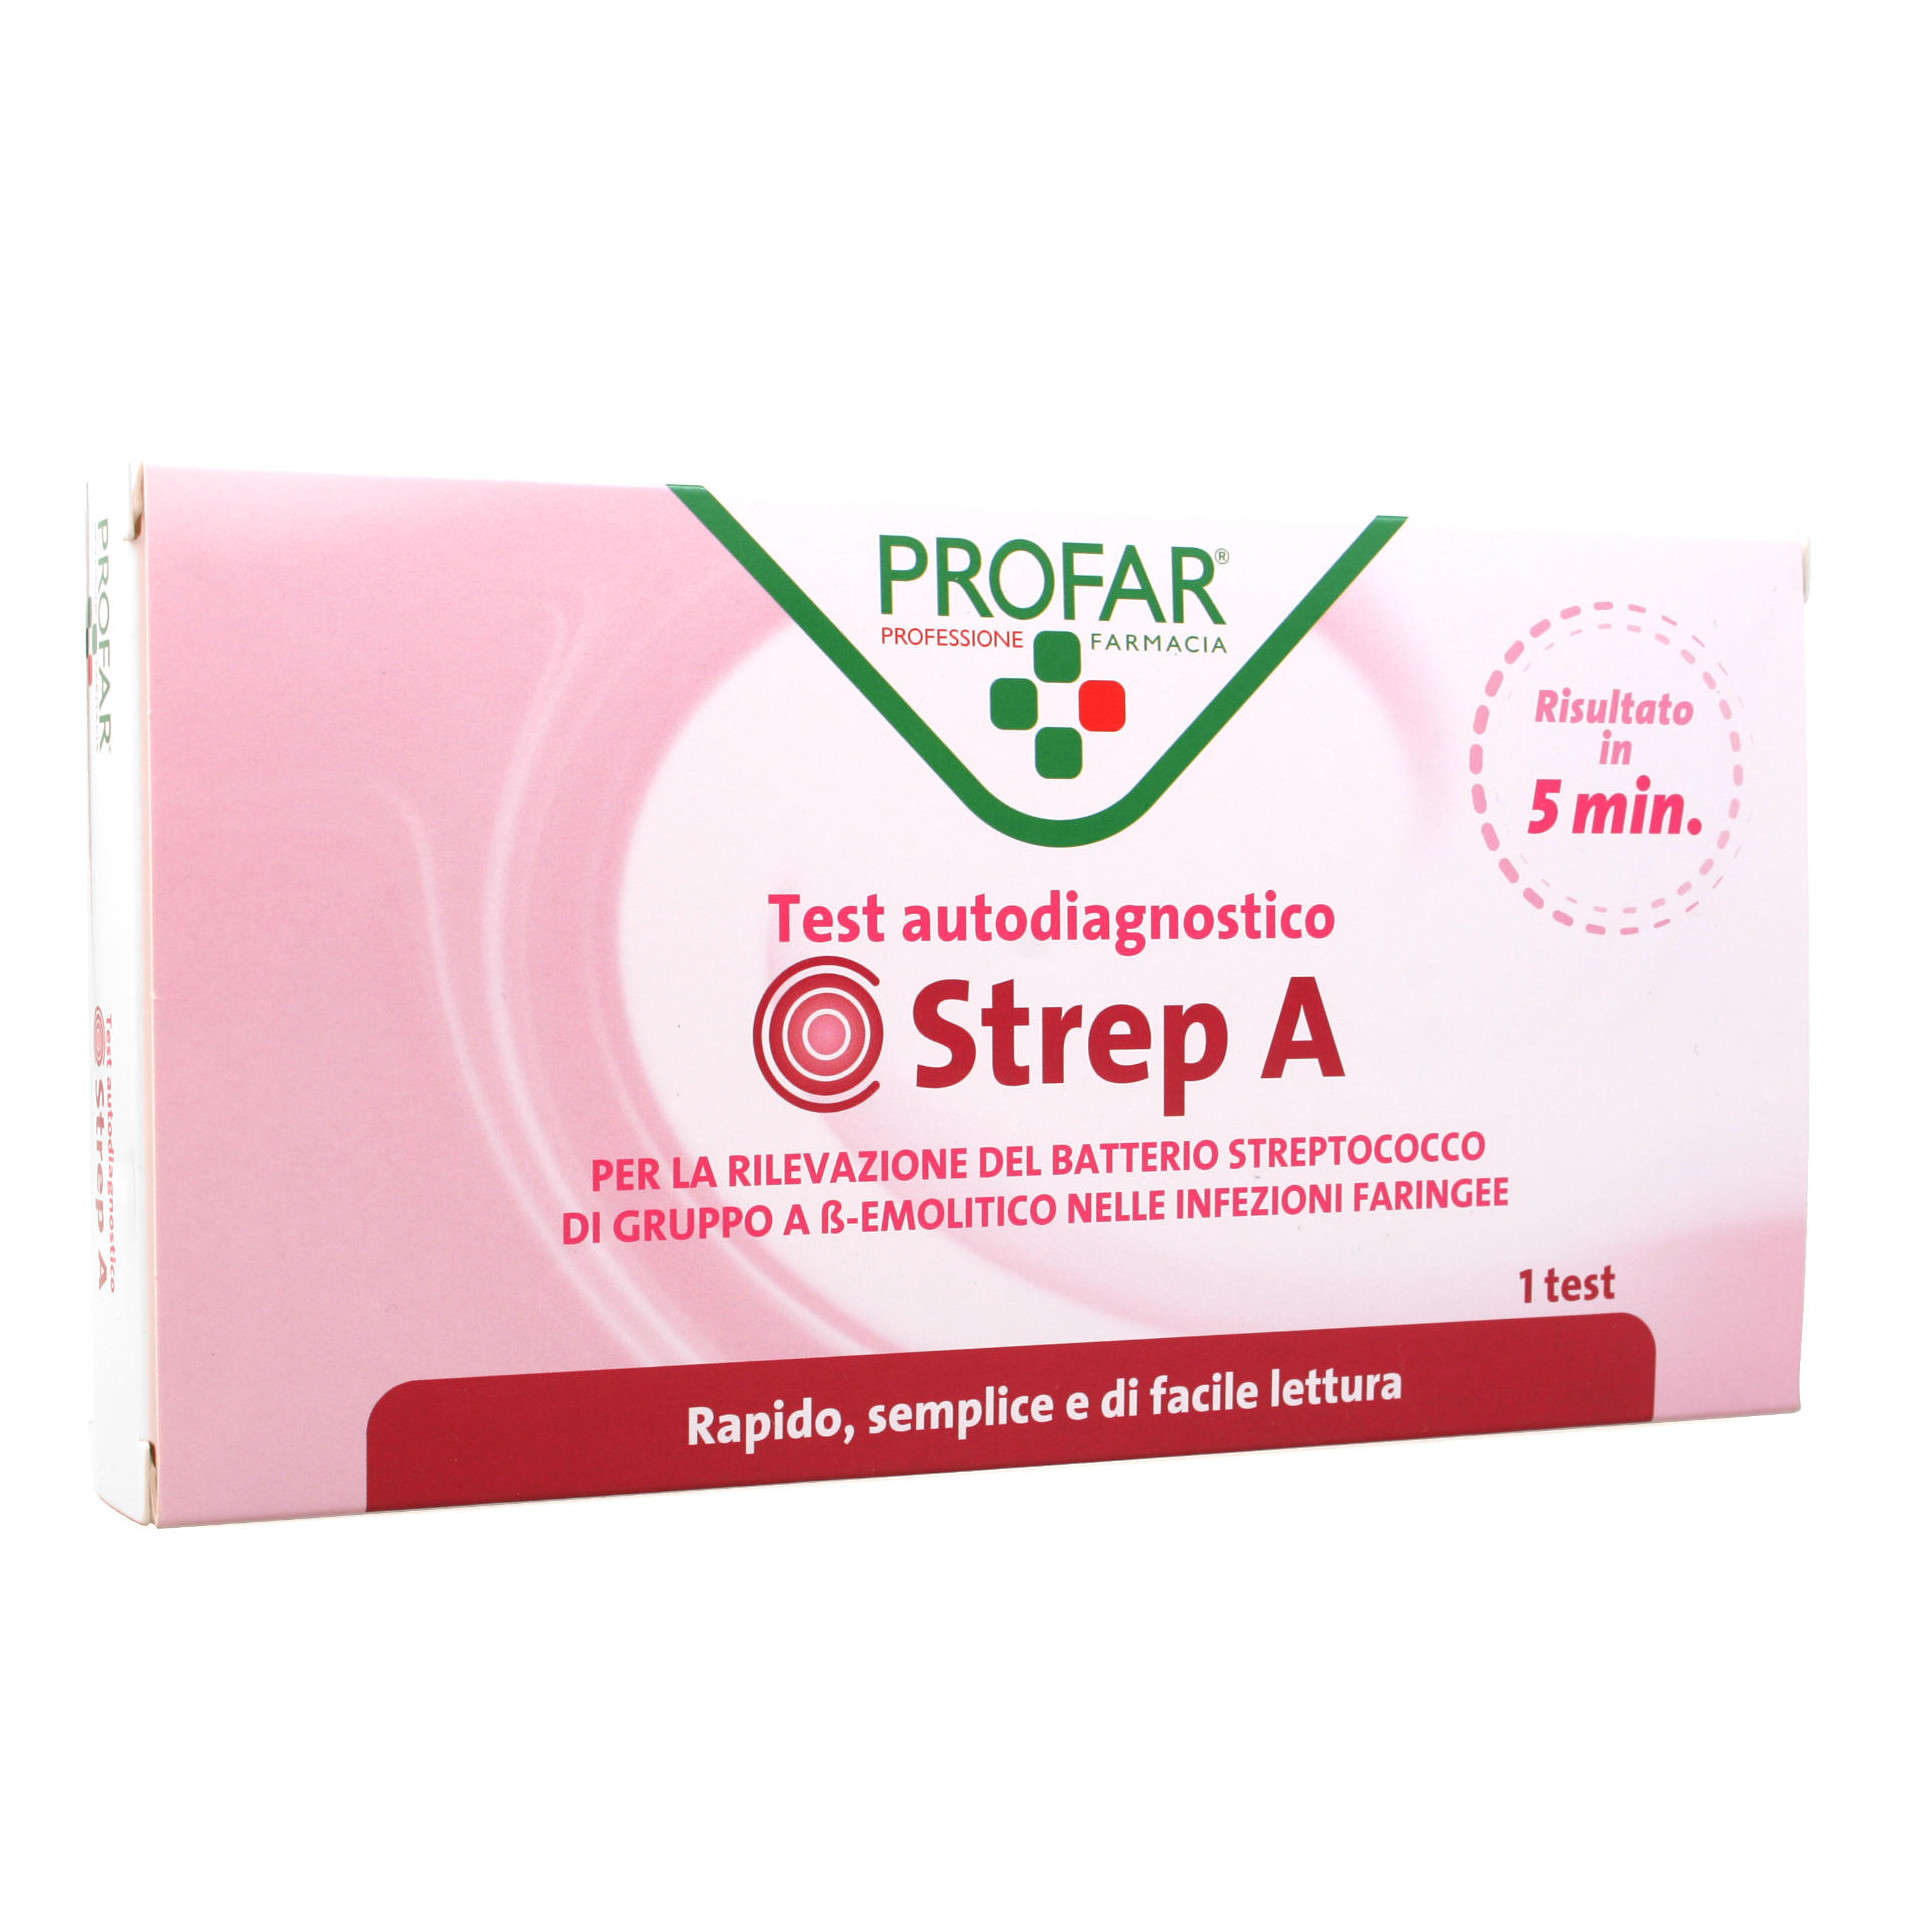 Profar - Strep A - Test Autodiagnostico per la rilevazione dello streptococco